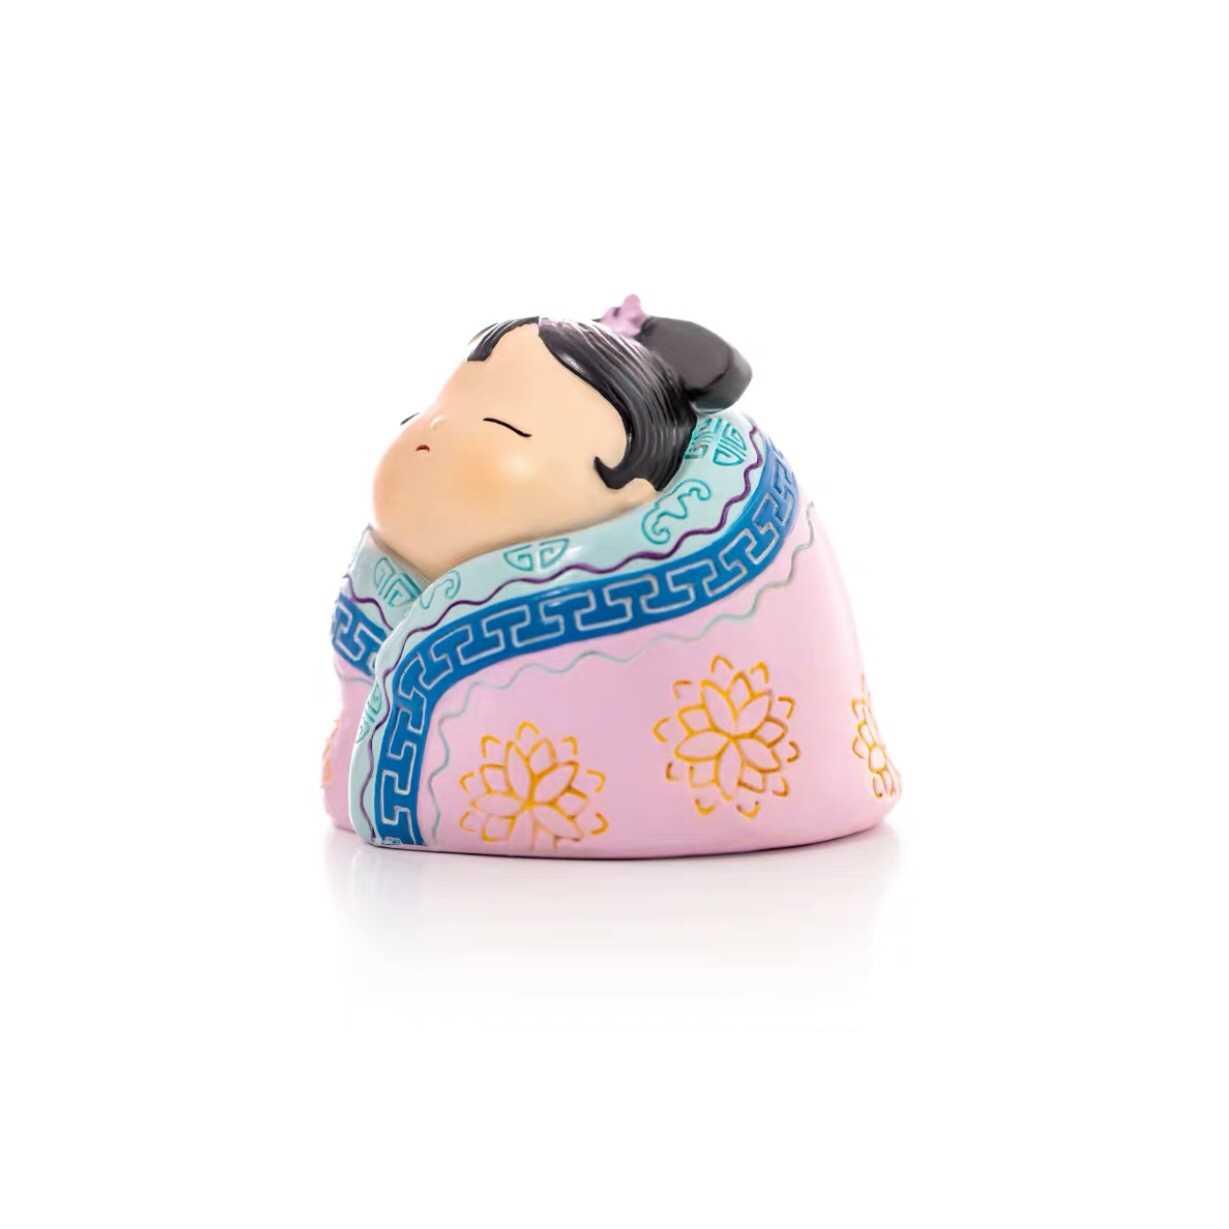 高档故宫格格的日常玩具 桌面创意家居饰品摆件 公主睡不够吃得香